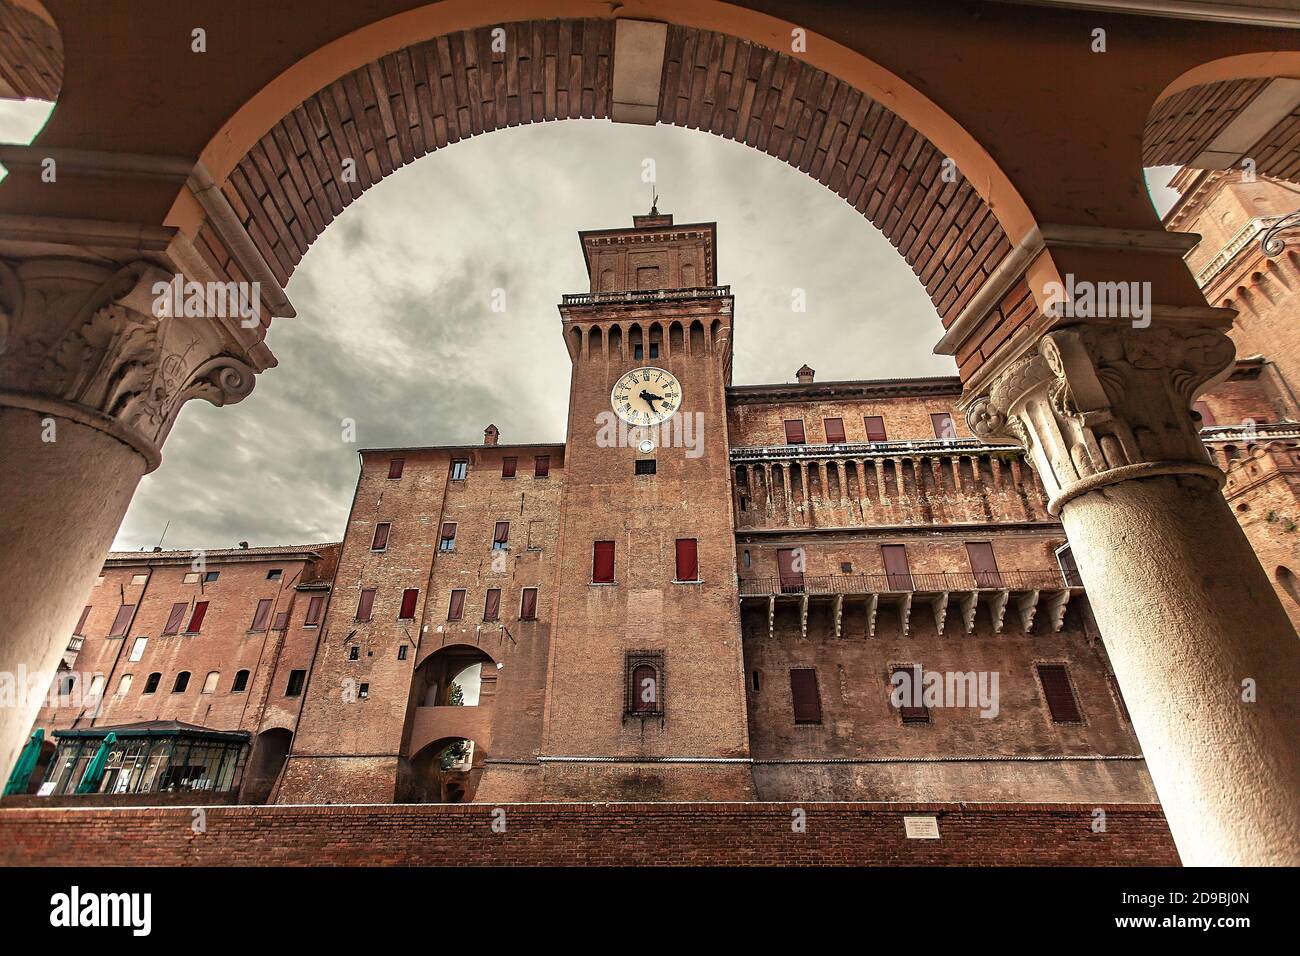 FERRARA, ITALY 29 JULY 2020 : Ferrara's medieval castle in Italy Stock Photo